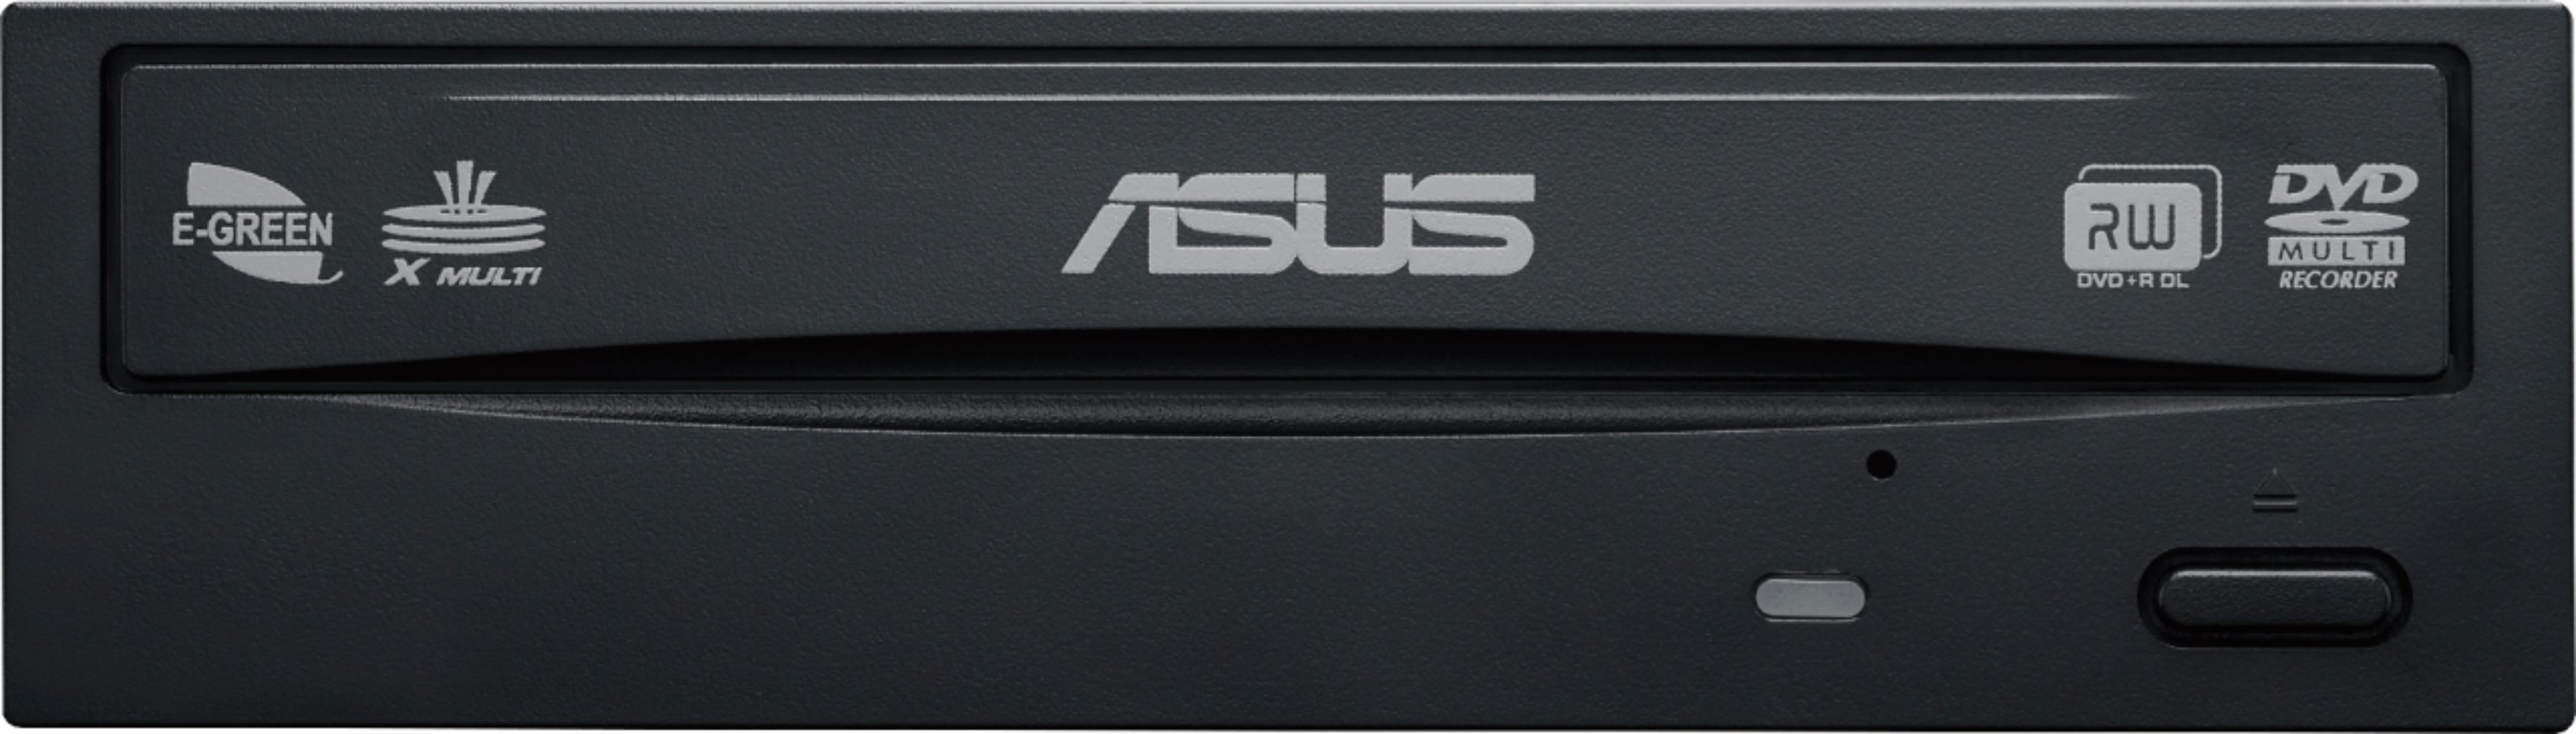 Asus - 48x escritura / 24x reescritura / 48x lectura CD - 24x escritura DVD unidad grabadora de DVD interna - negro - negro